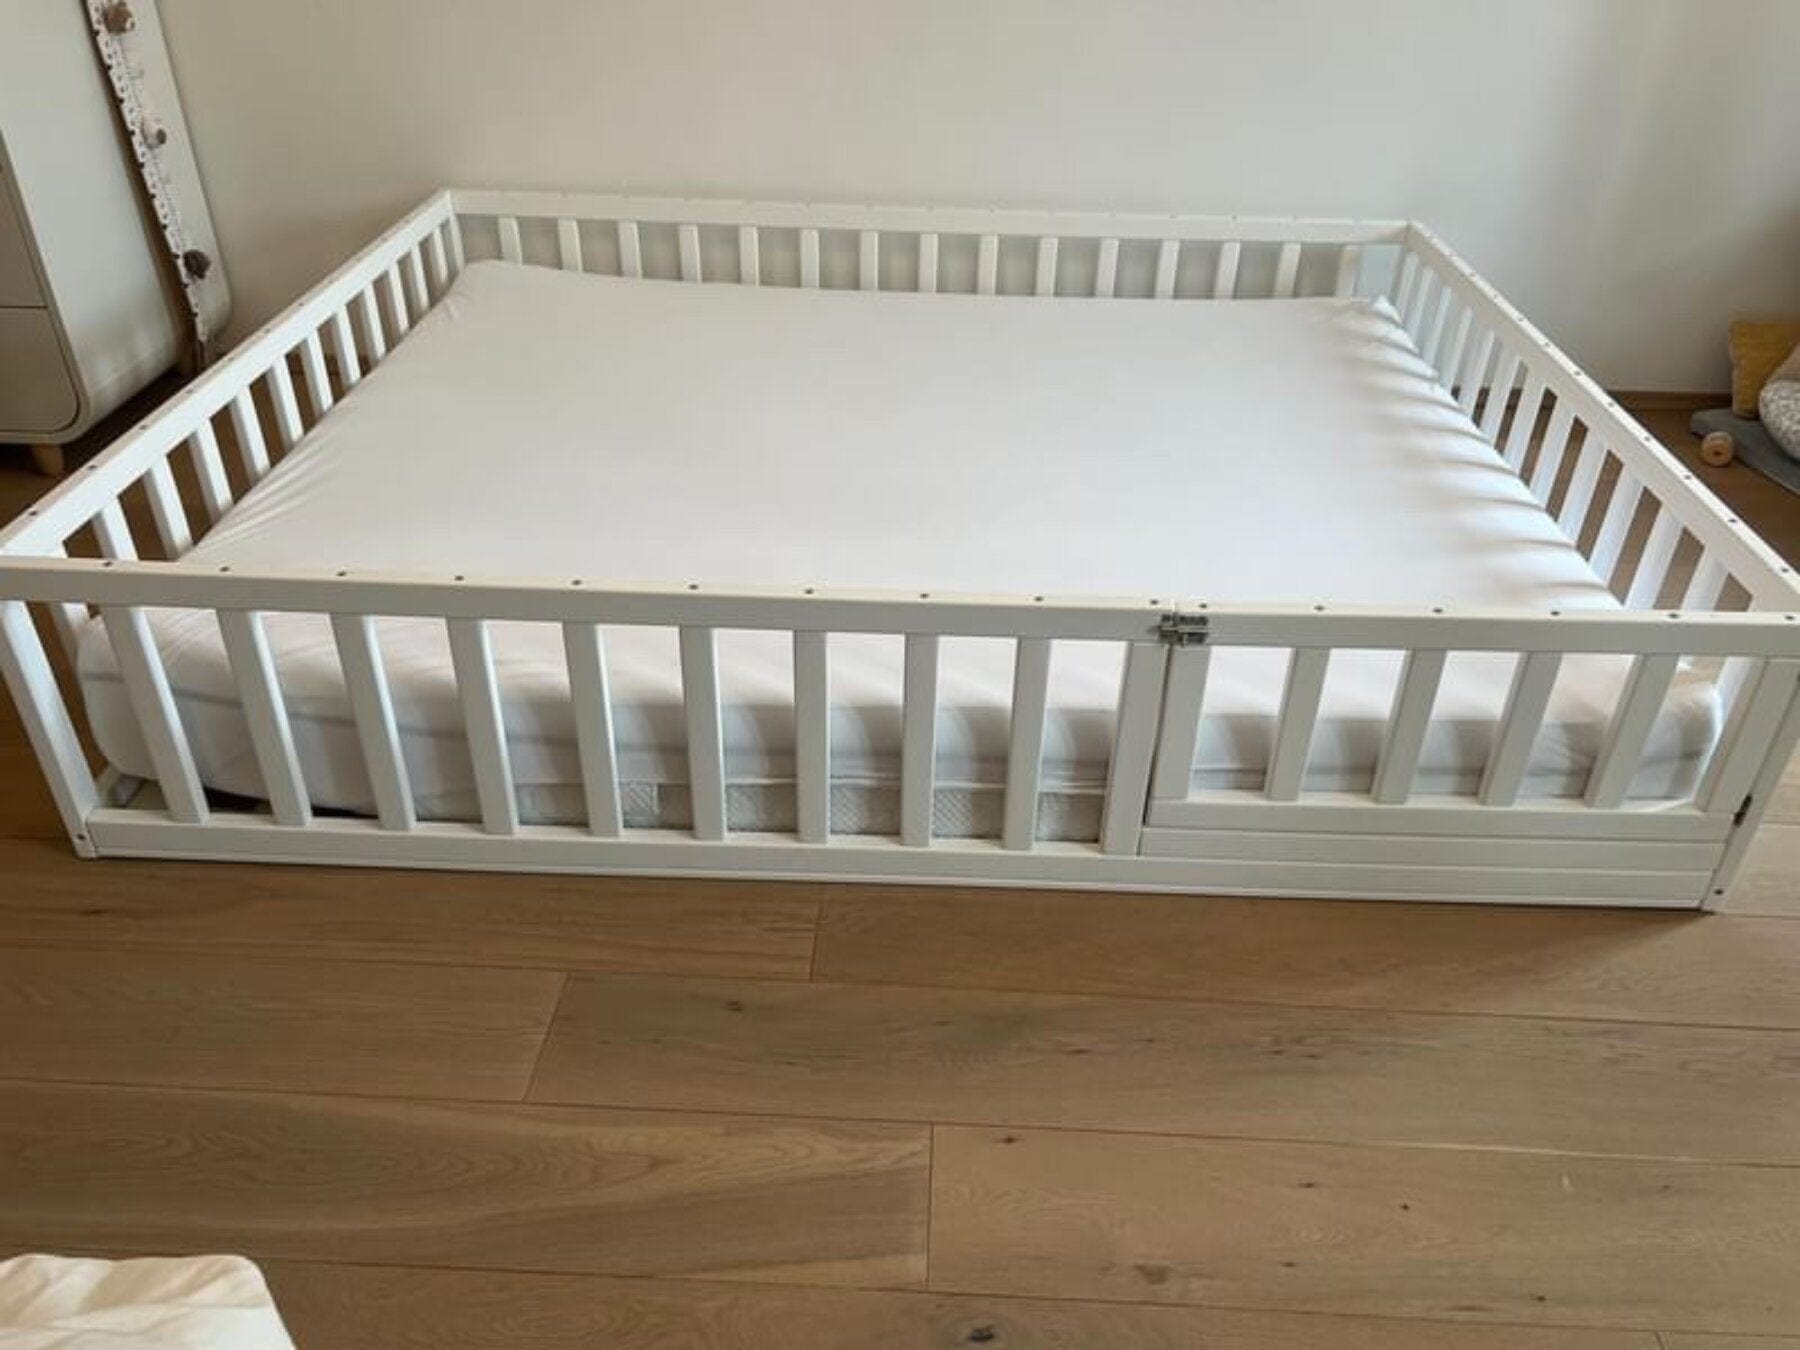 Children's bed, baby bed, cot, floor bed with door